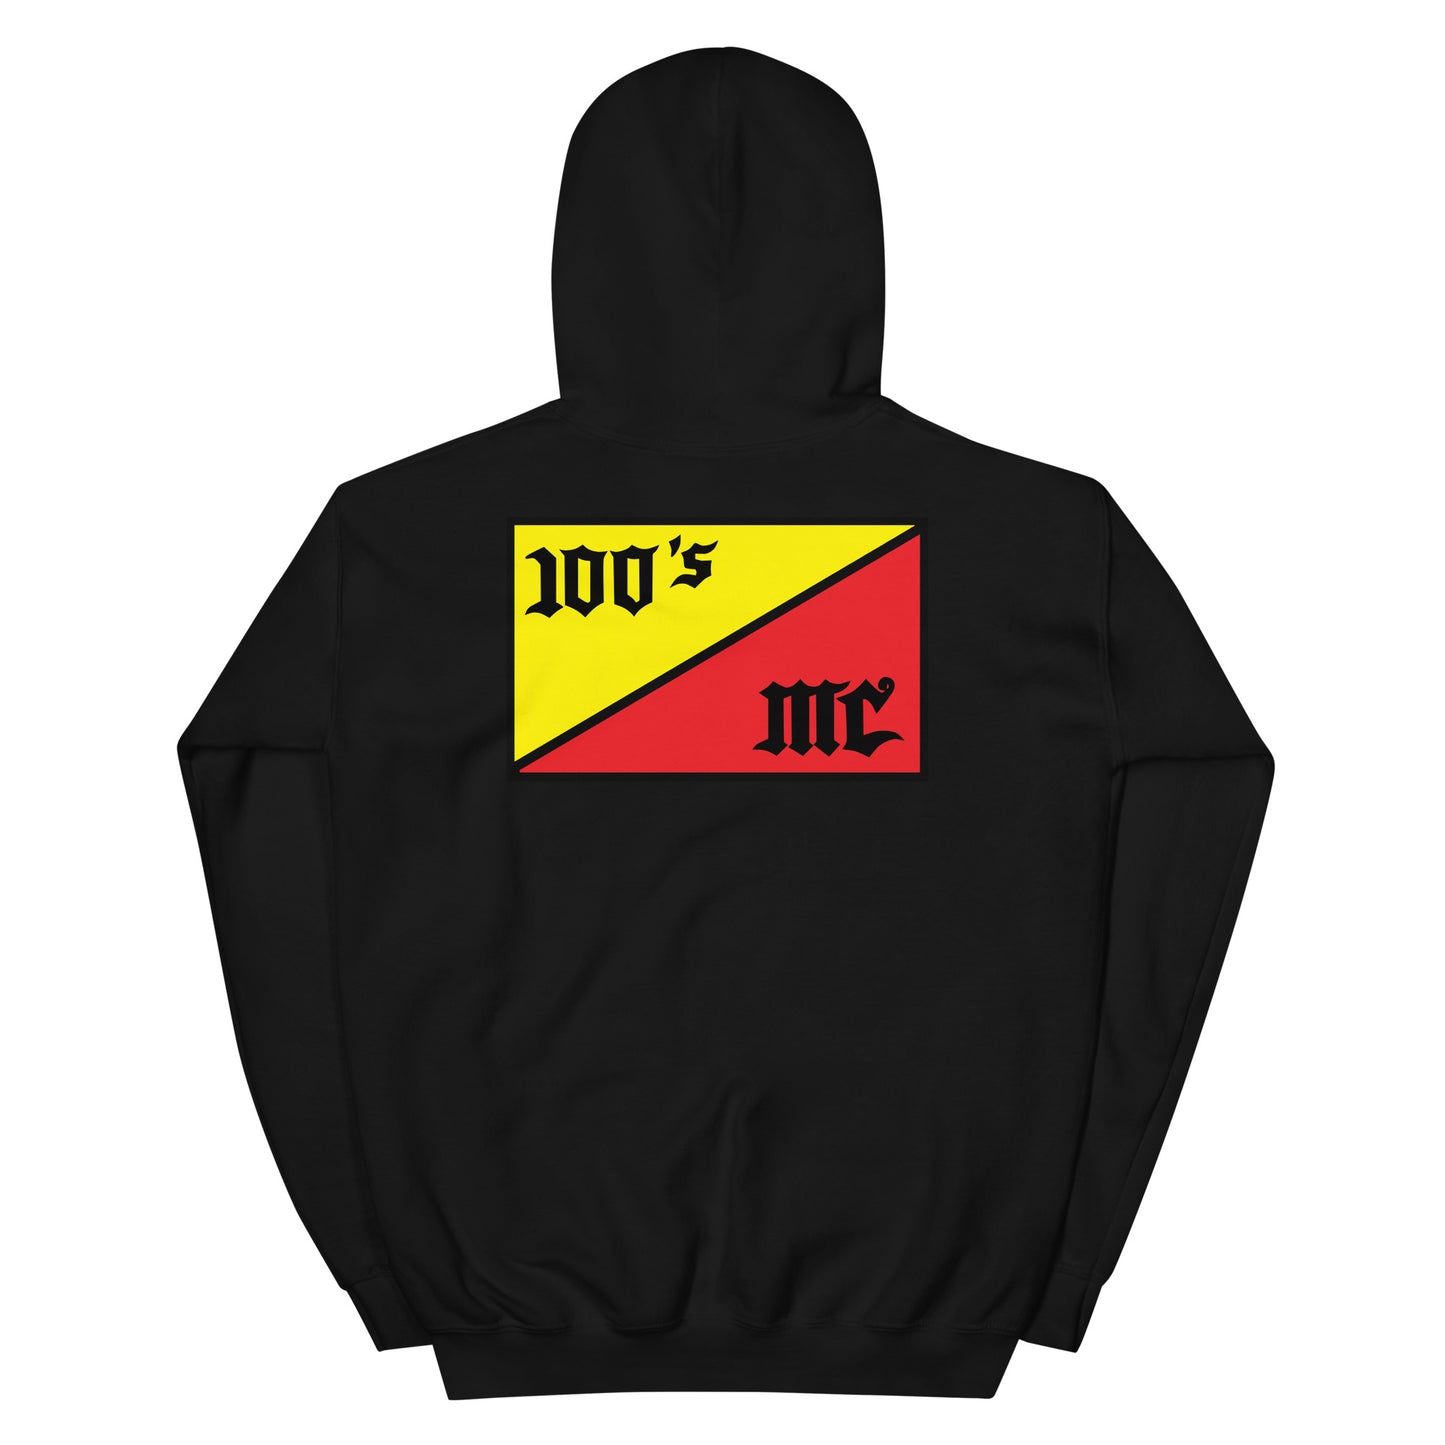 100s MC Club Member Hoodie - OG 100s Flag